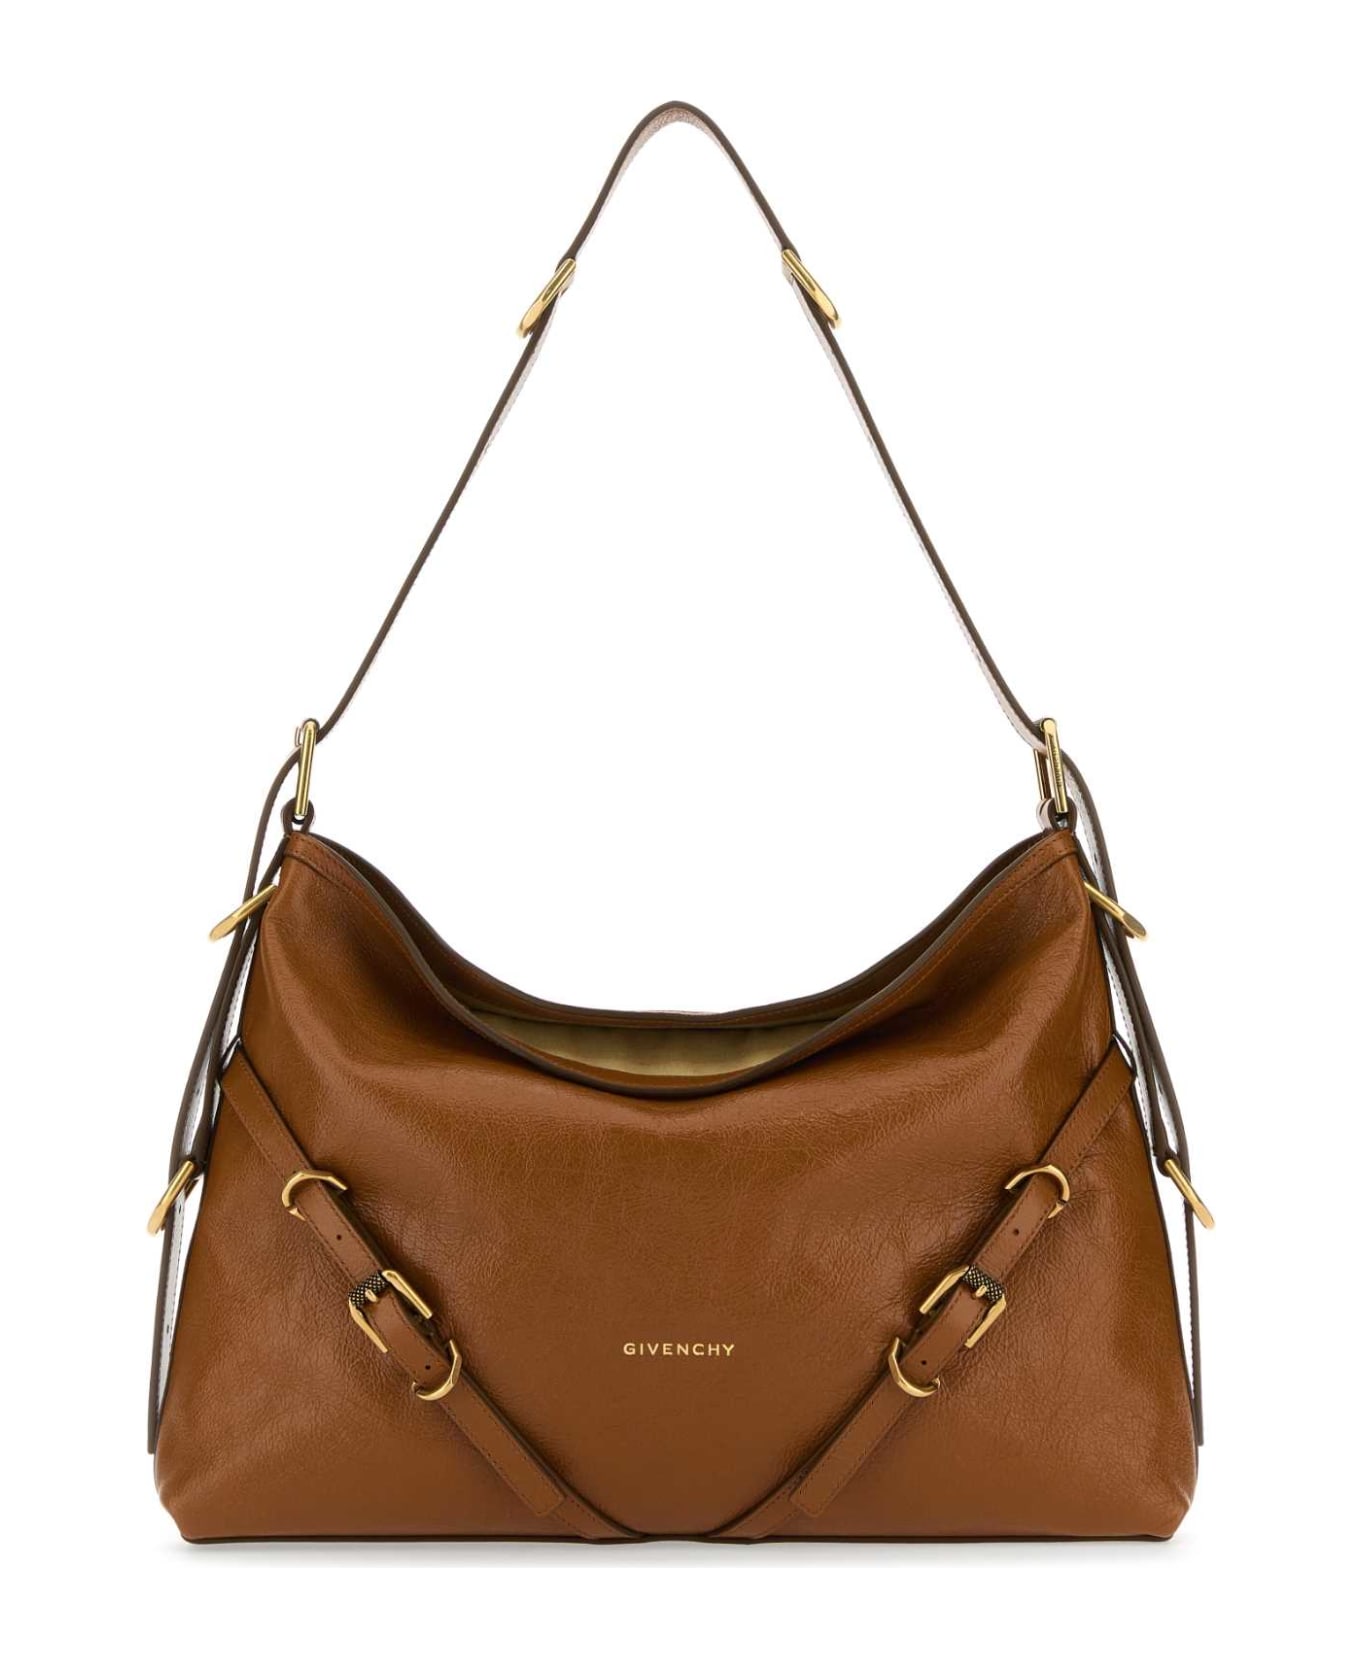 Givenchy Caramel Leather Medium Voyou Shoulder Bag - SOFTTAN トートバッグ